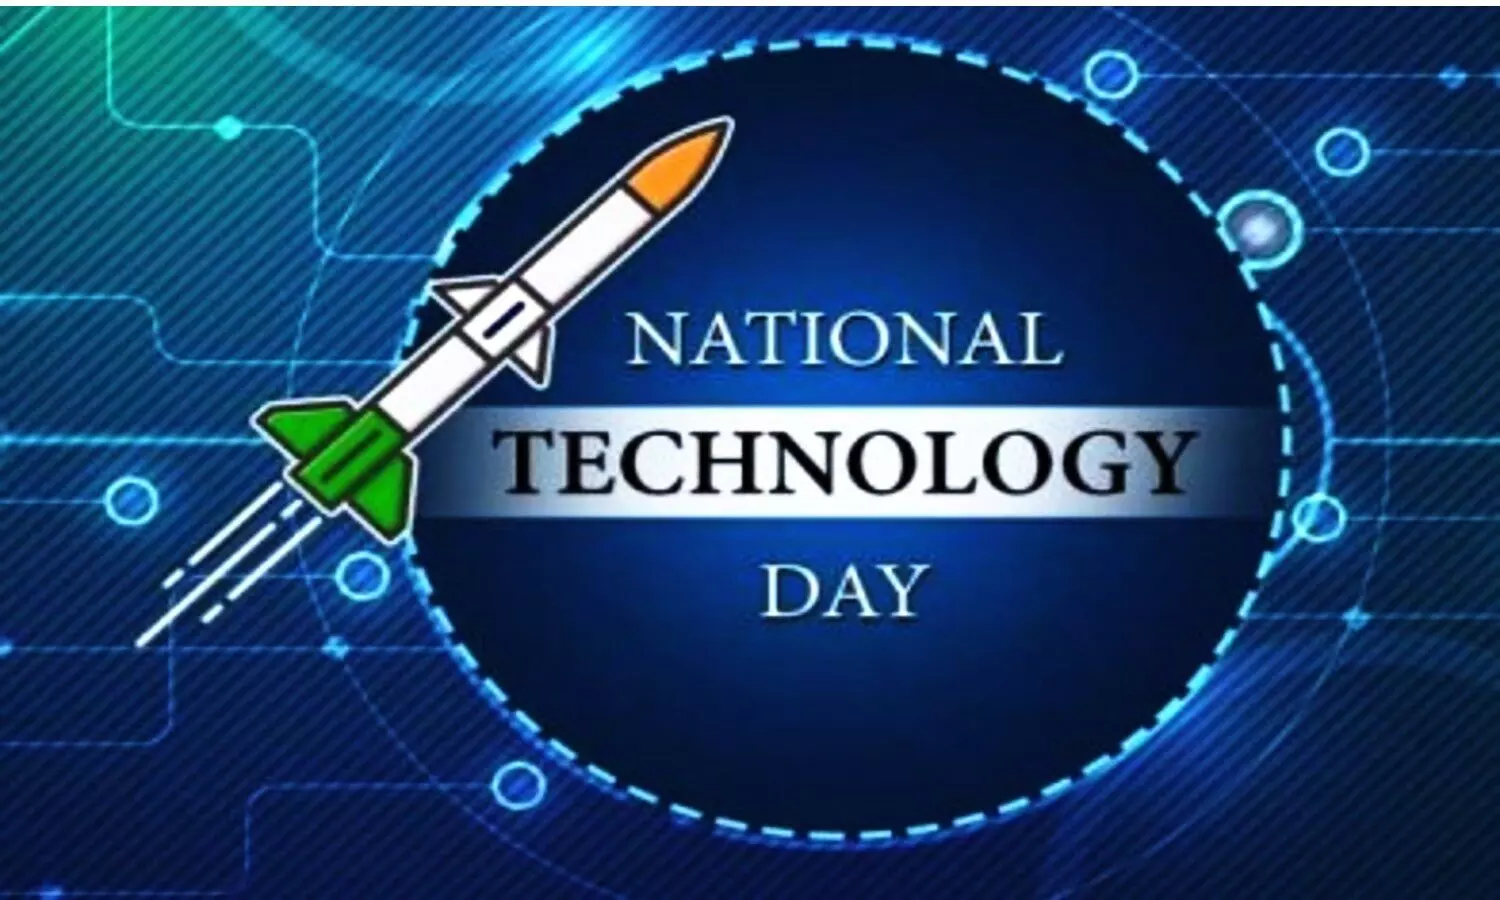 इस विशेष दिन तकनीकी संस्थानों और इंजीनियरिंग कॉलेजों में विभिन्न कार्यक्रम आयोजित किए जाते हैं।